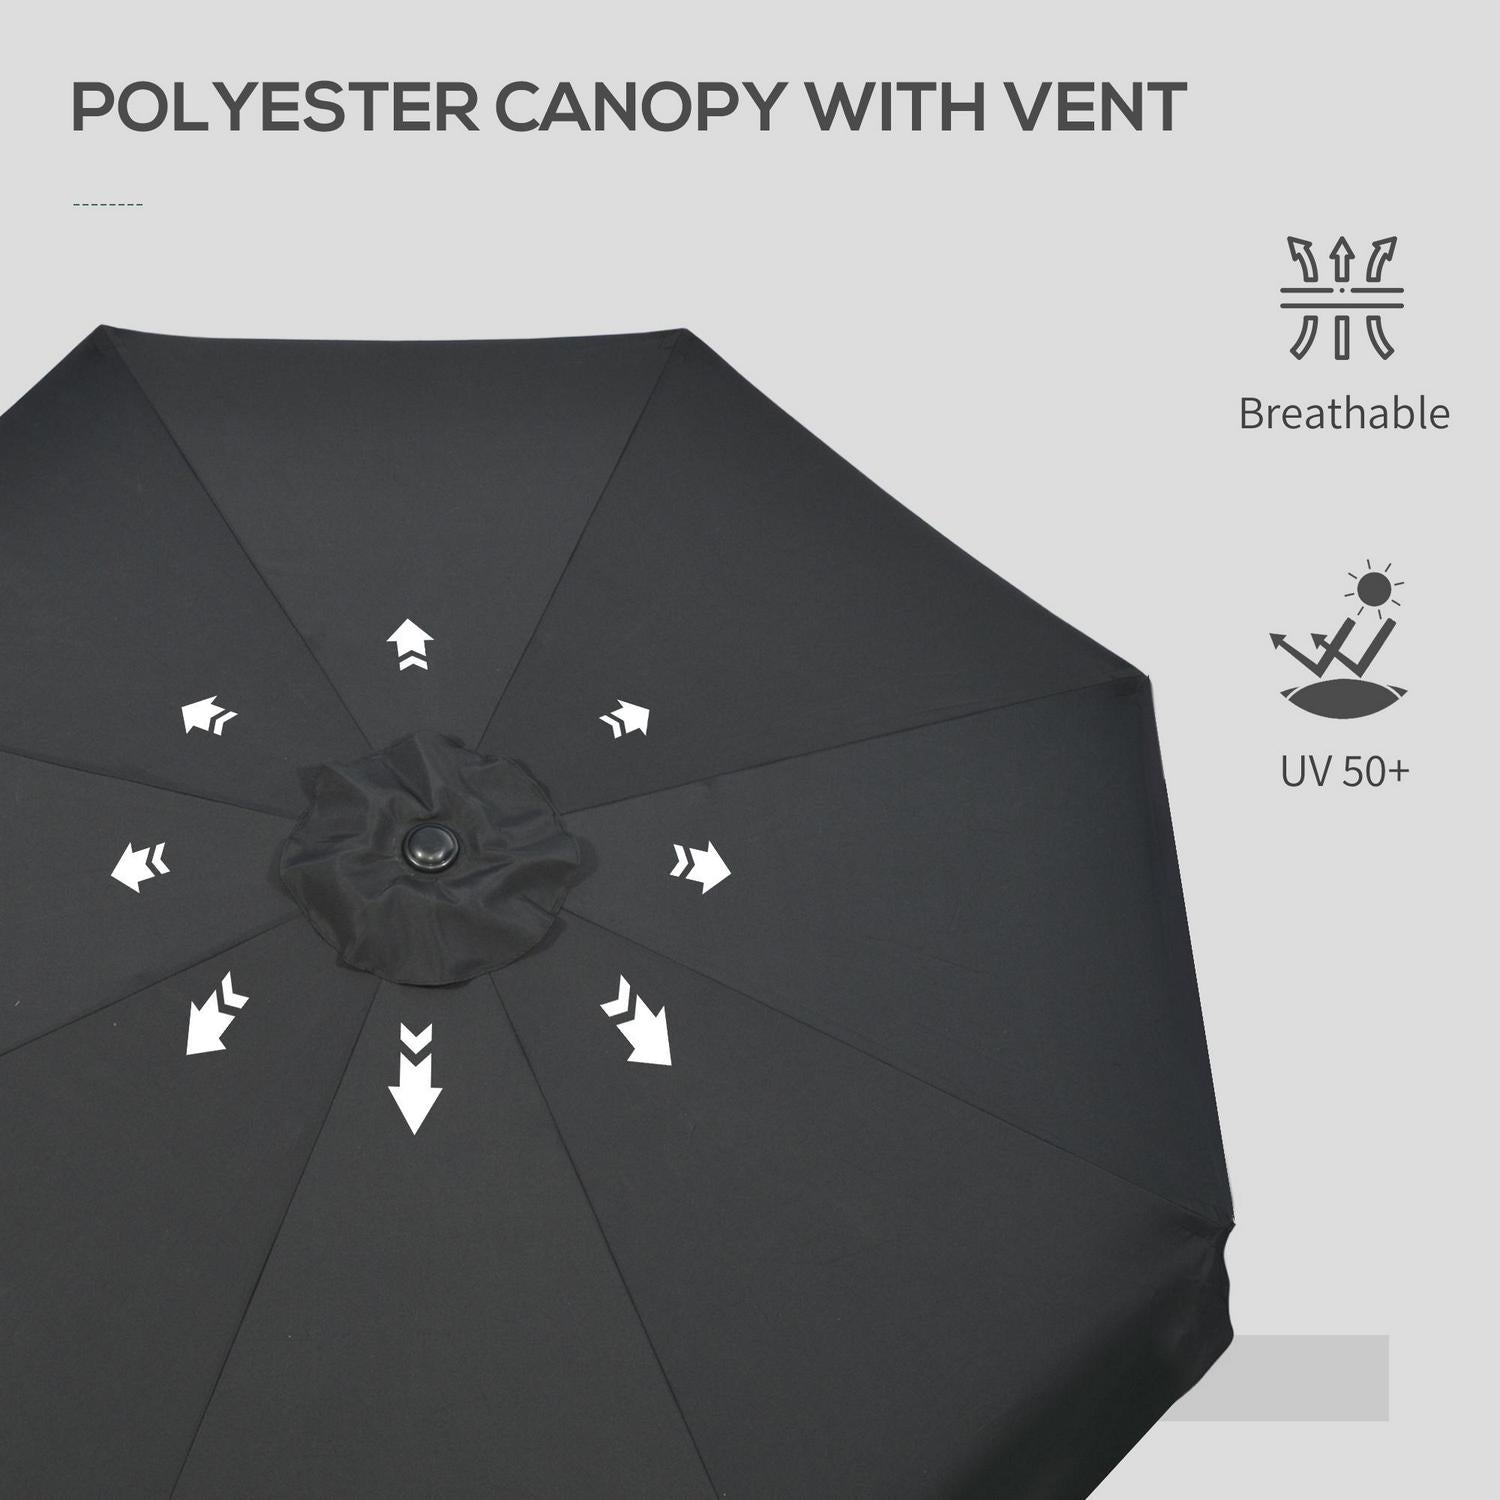 Patio Parasol Garden Umbrellas Outdoor Shade Table With Tilt- Black